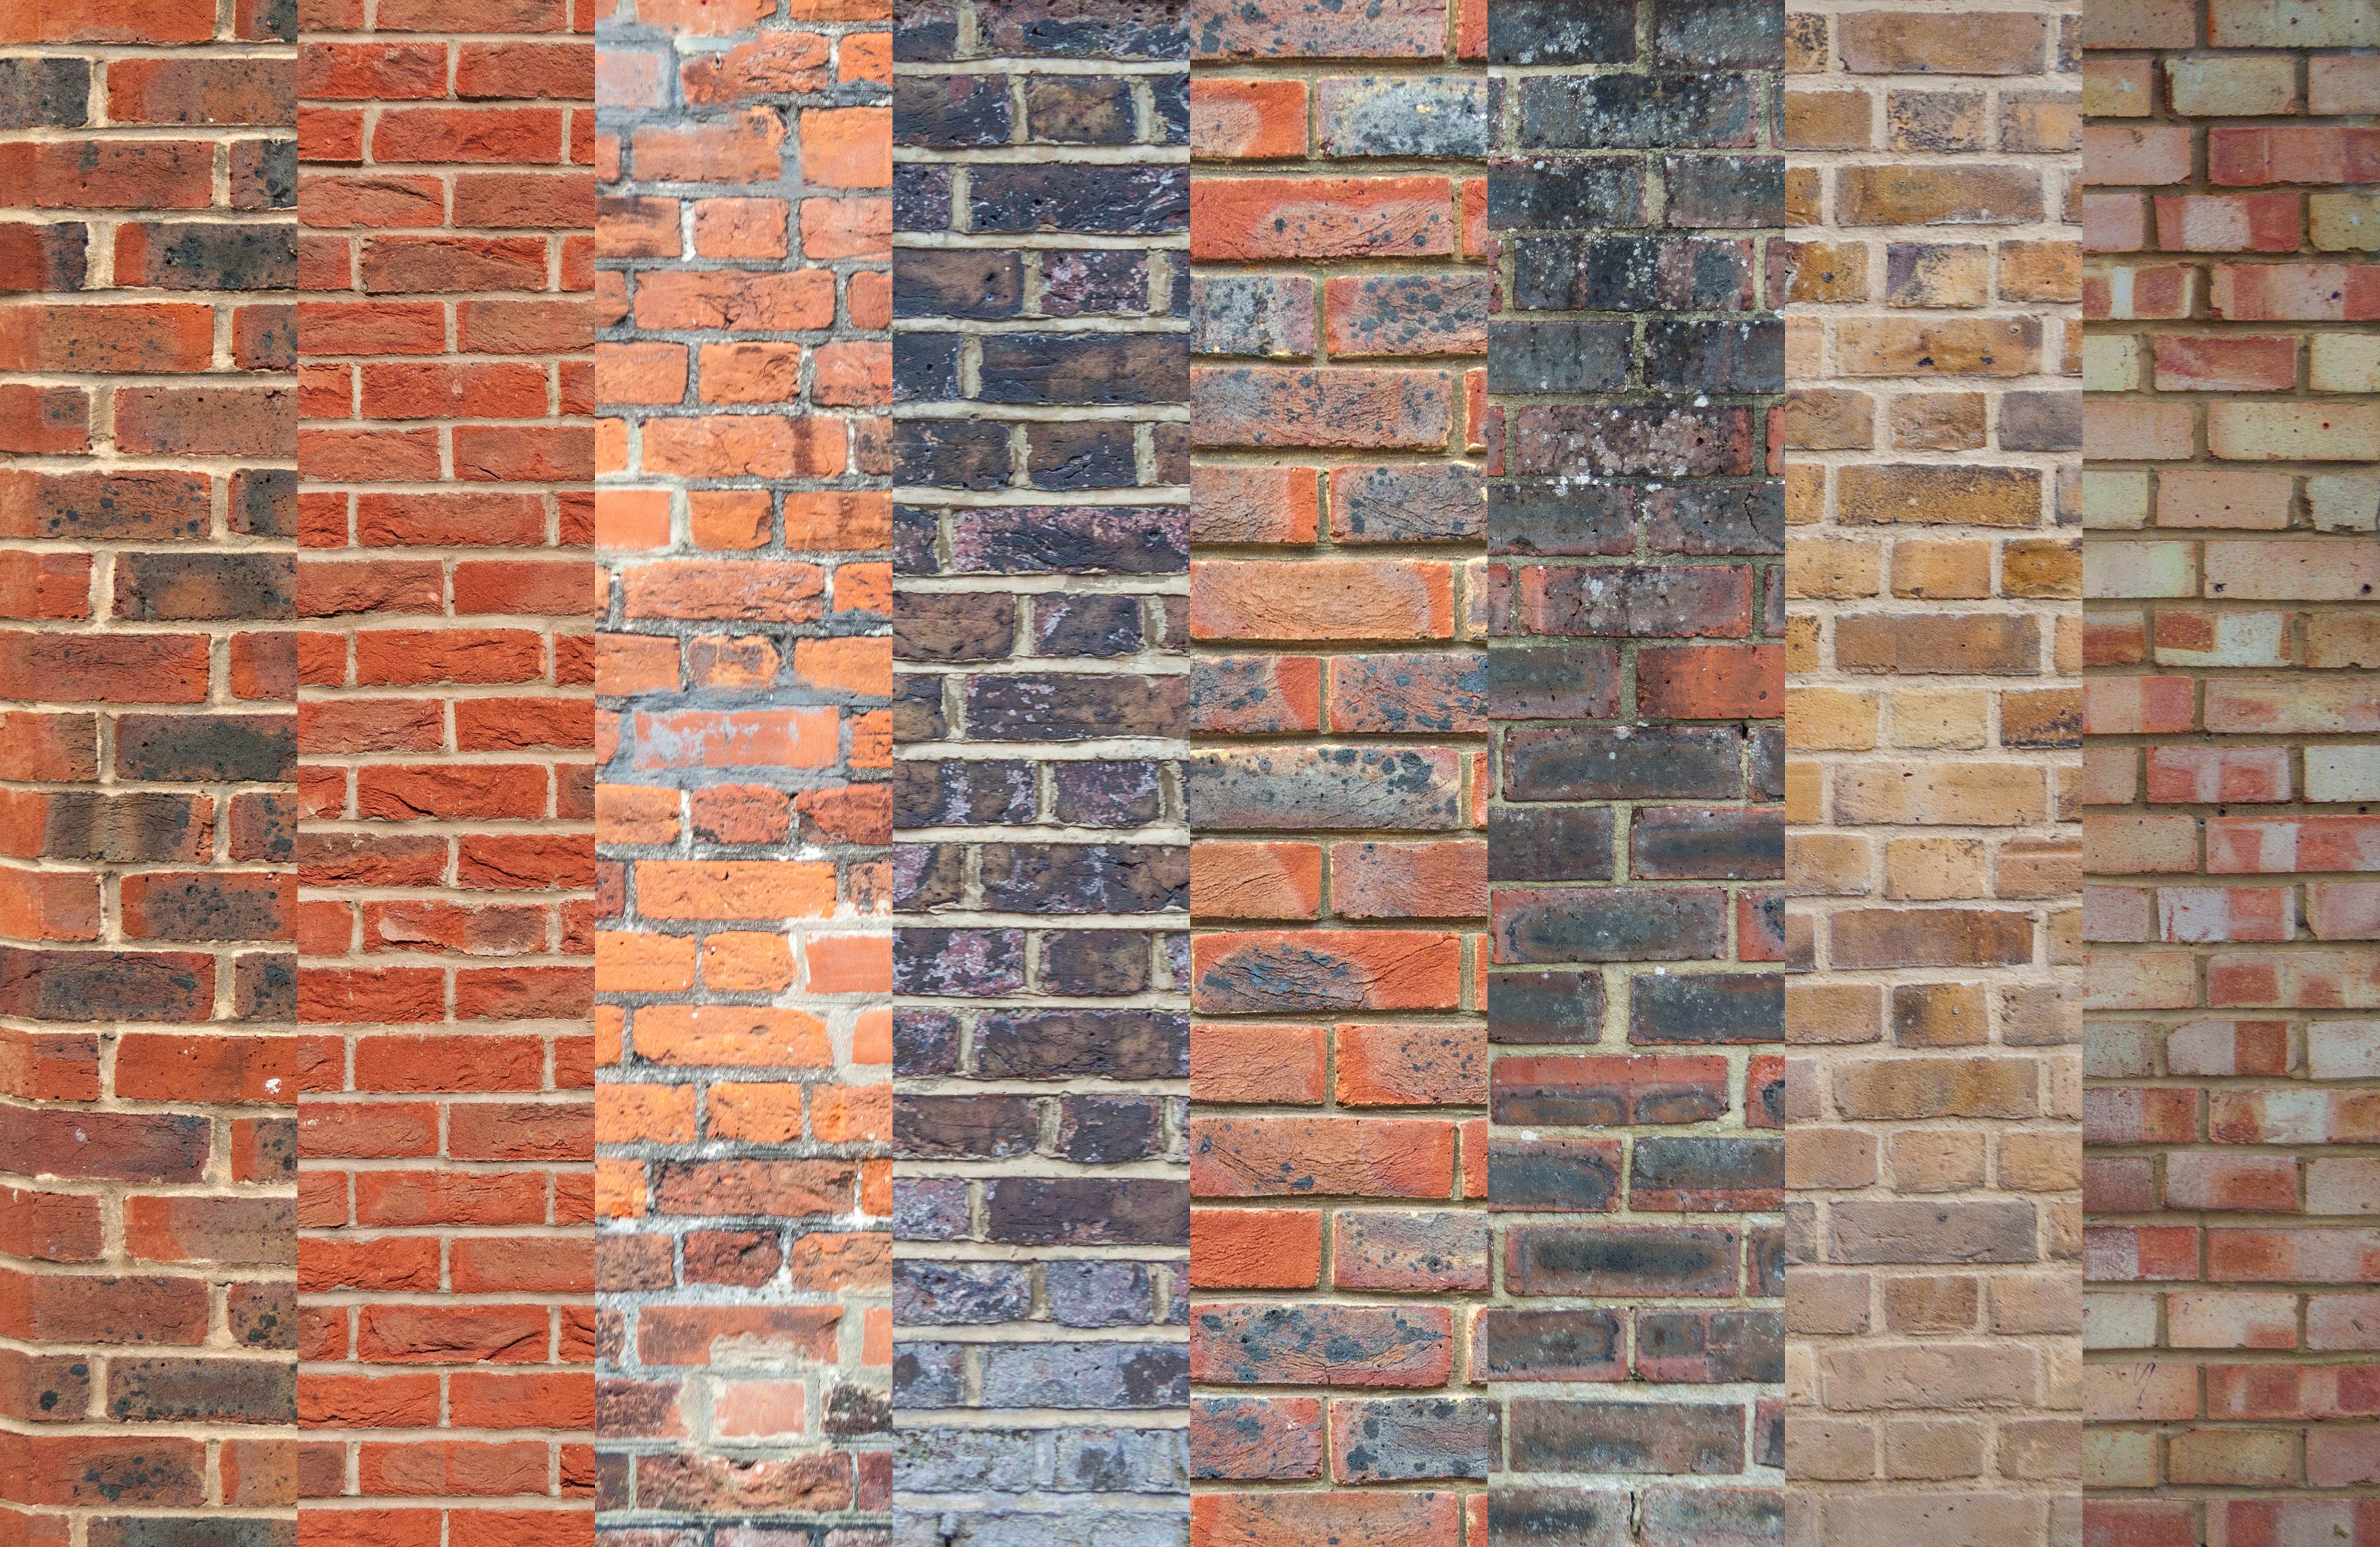 Brick Wall Textures Vol 1 GraphicBurger